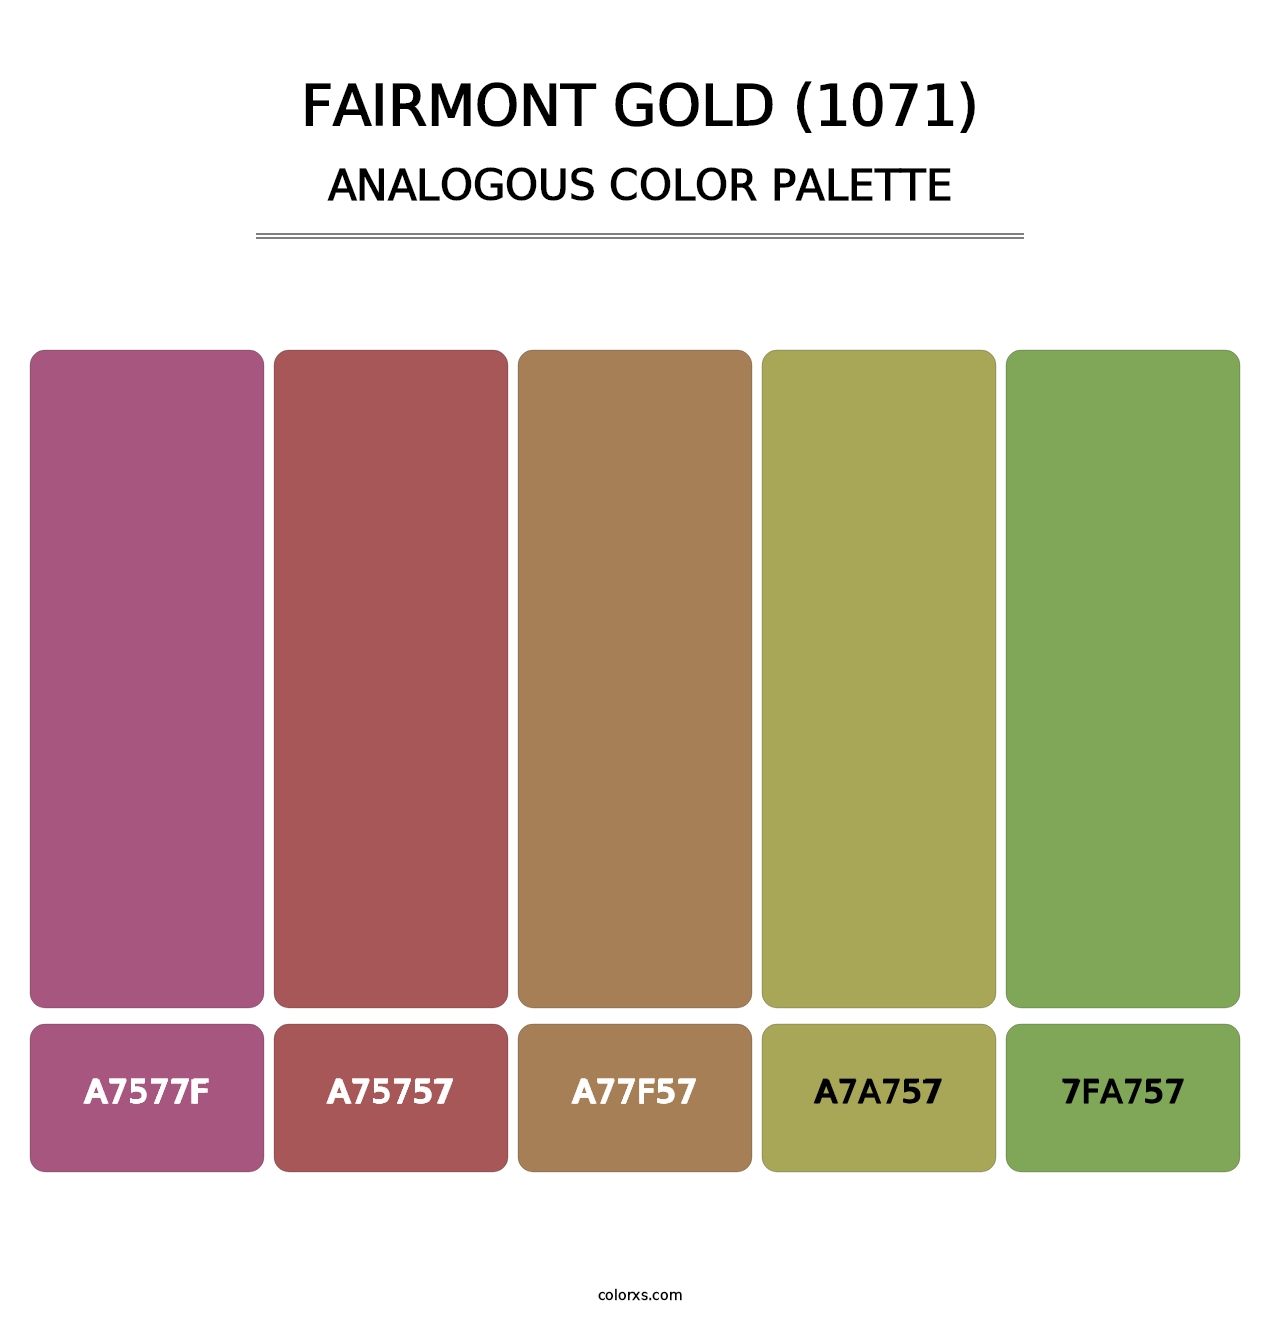 Fairmont Gold (1071) - Analogous Color Palette